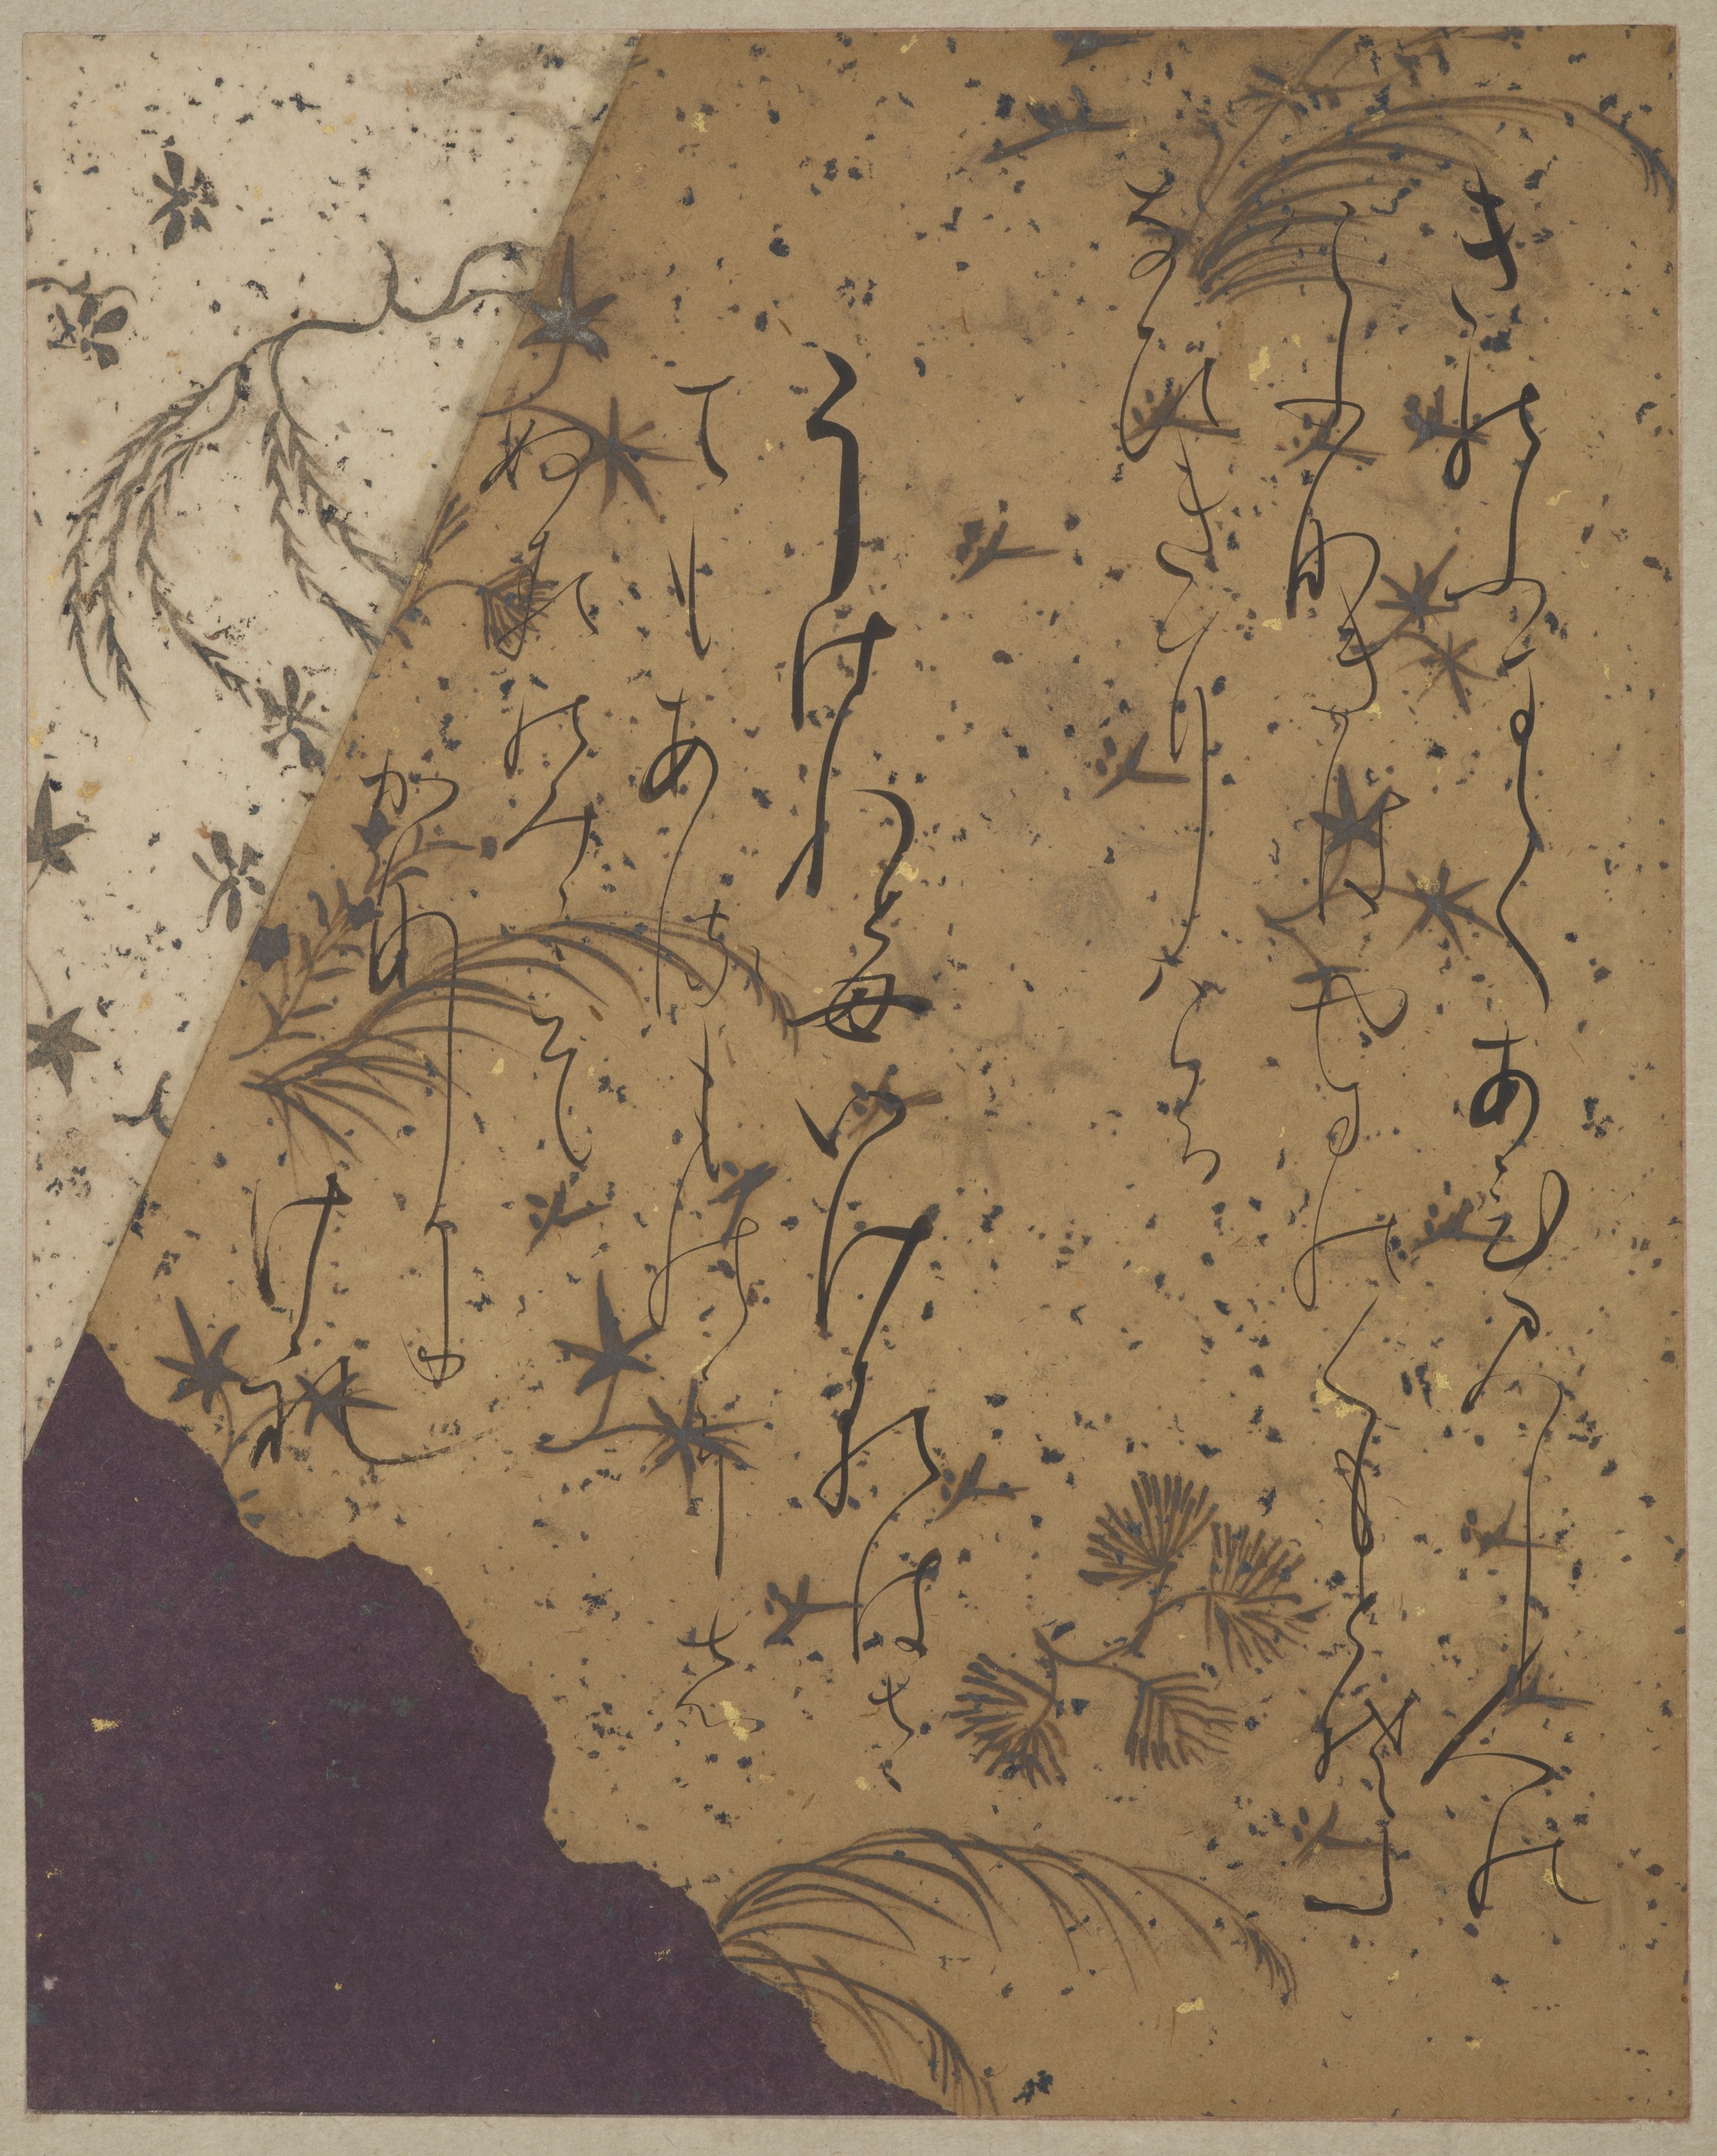 Página del Ishiyama-gire by Fujiwara no Sadanobu (attrib.) - Período Heian, principios del siglo XII - 131,8 x 44 cm Galería Freer